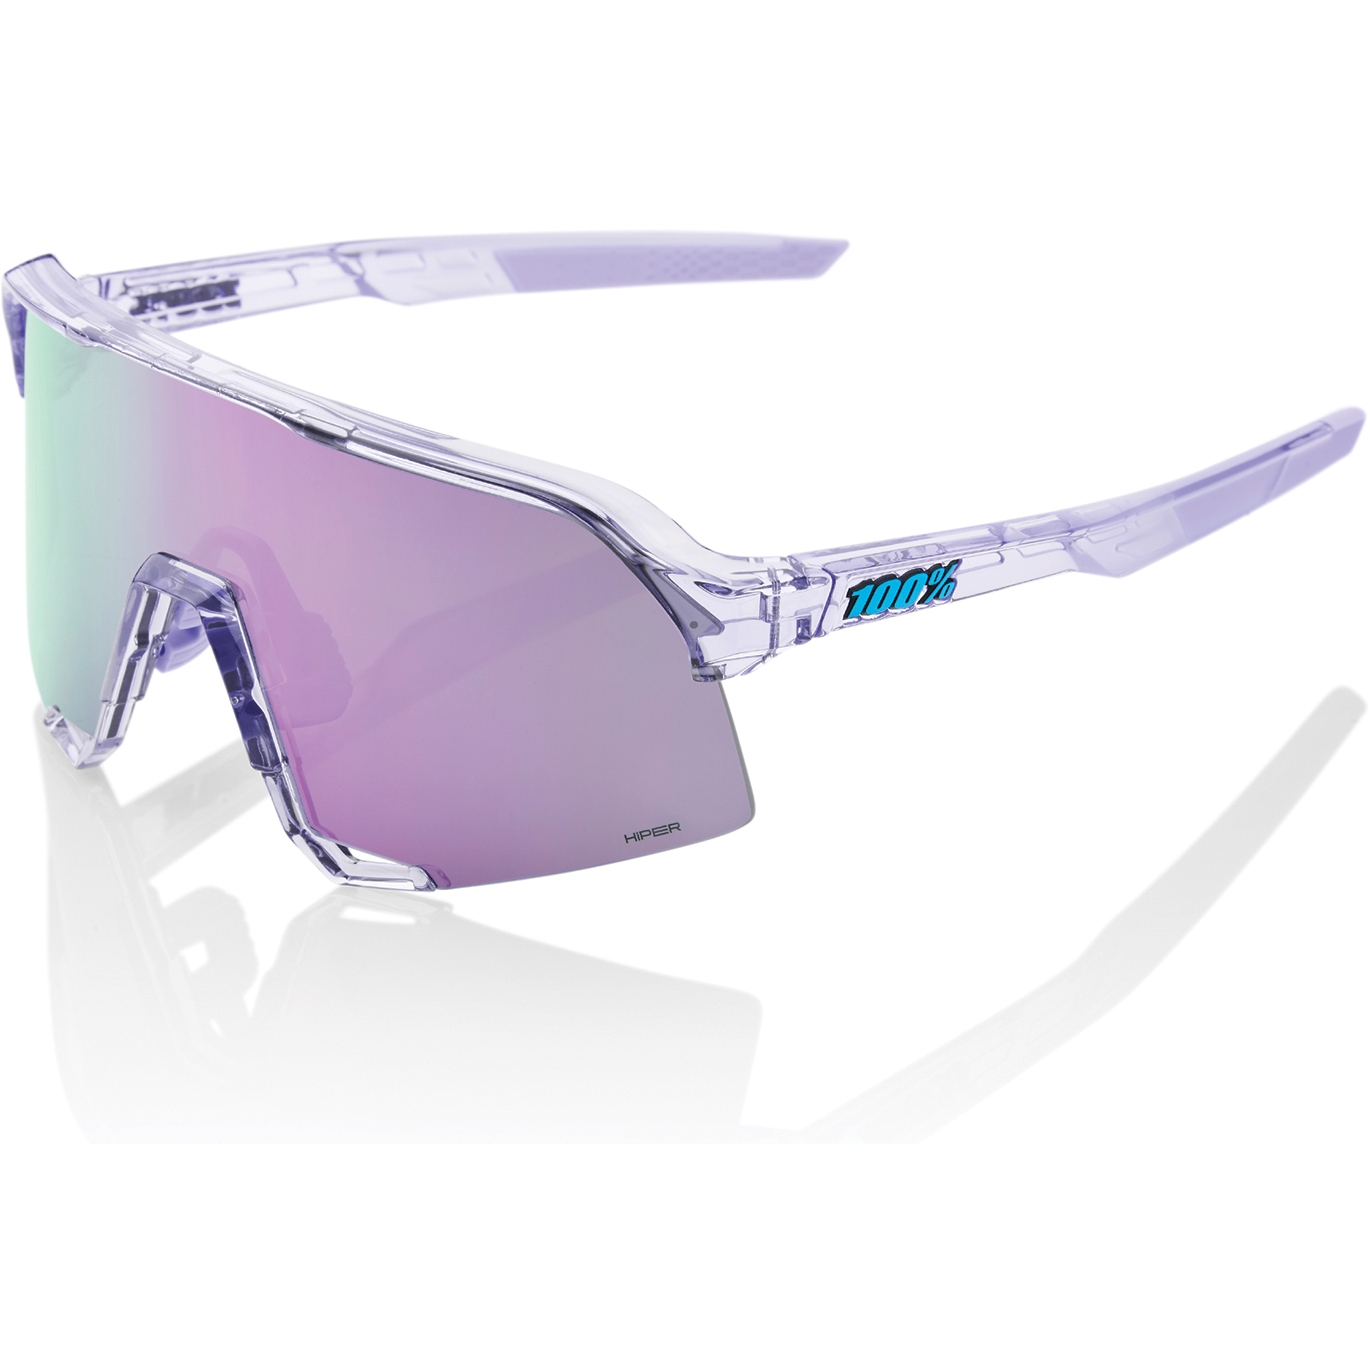 Productfoto van 100% S3 Bril - HiPER Mirror Lens - Polished Translucent Lavender / Lavender + Clear